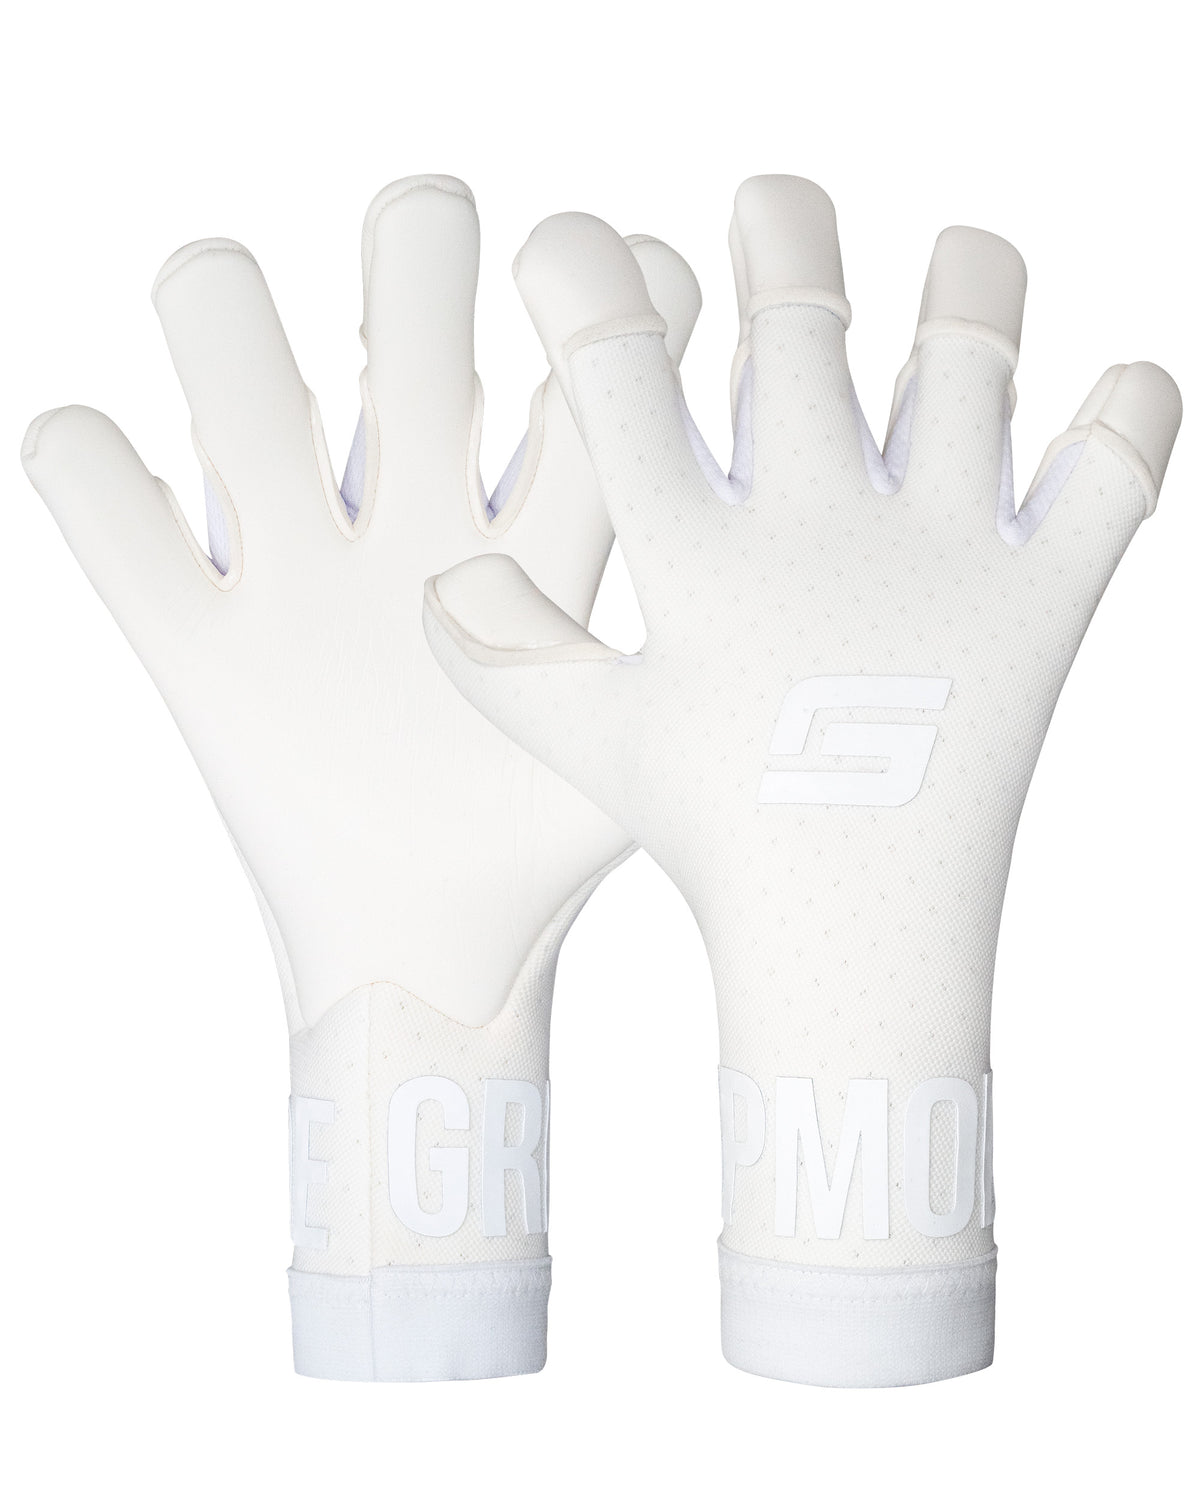 Gripmode Goalkeeping Get The Grip Air Whiteout Fingertip